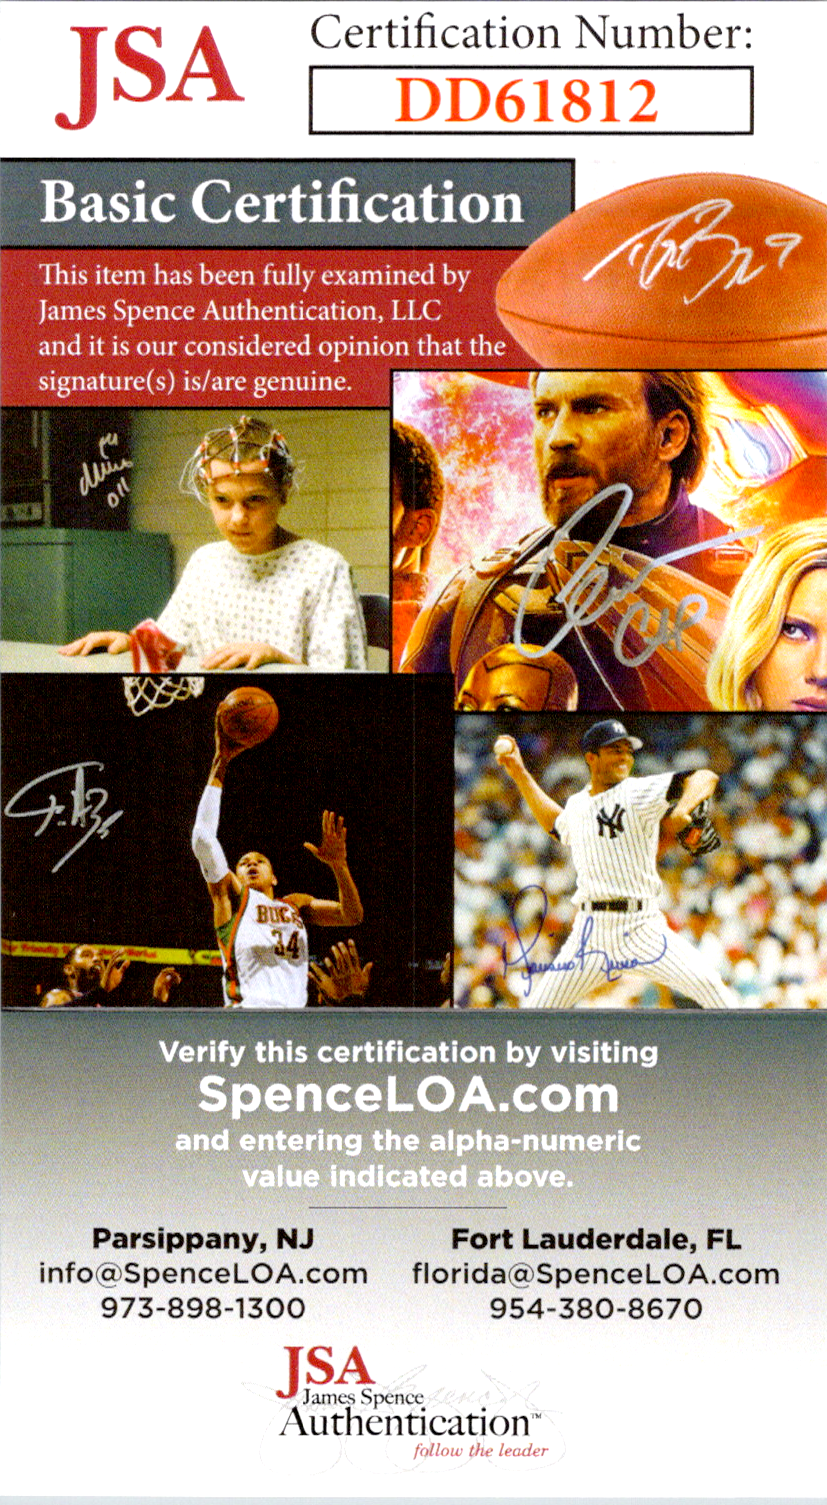 Roger Federer autographed Signed 8x10 Color Photo with JSA